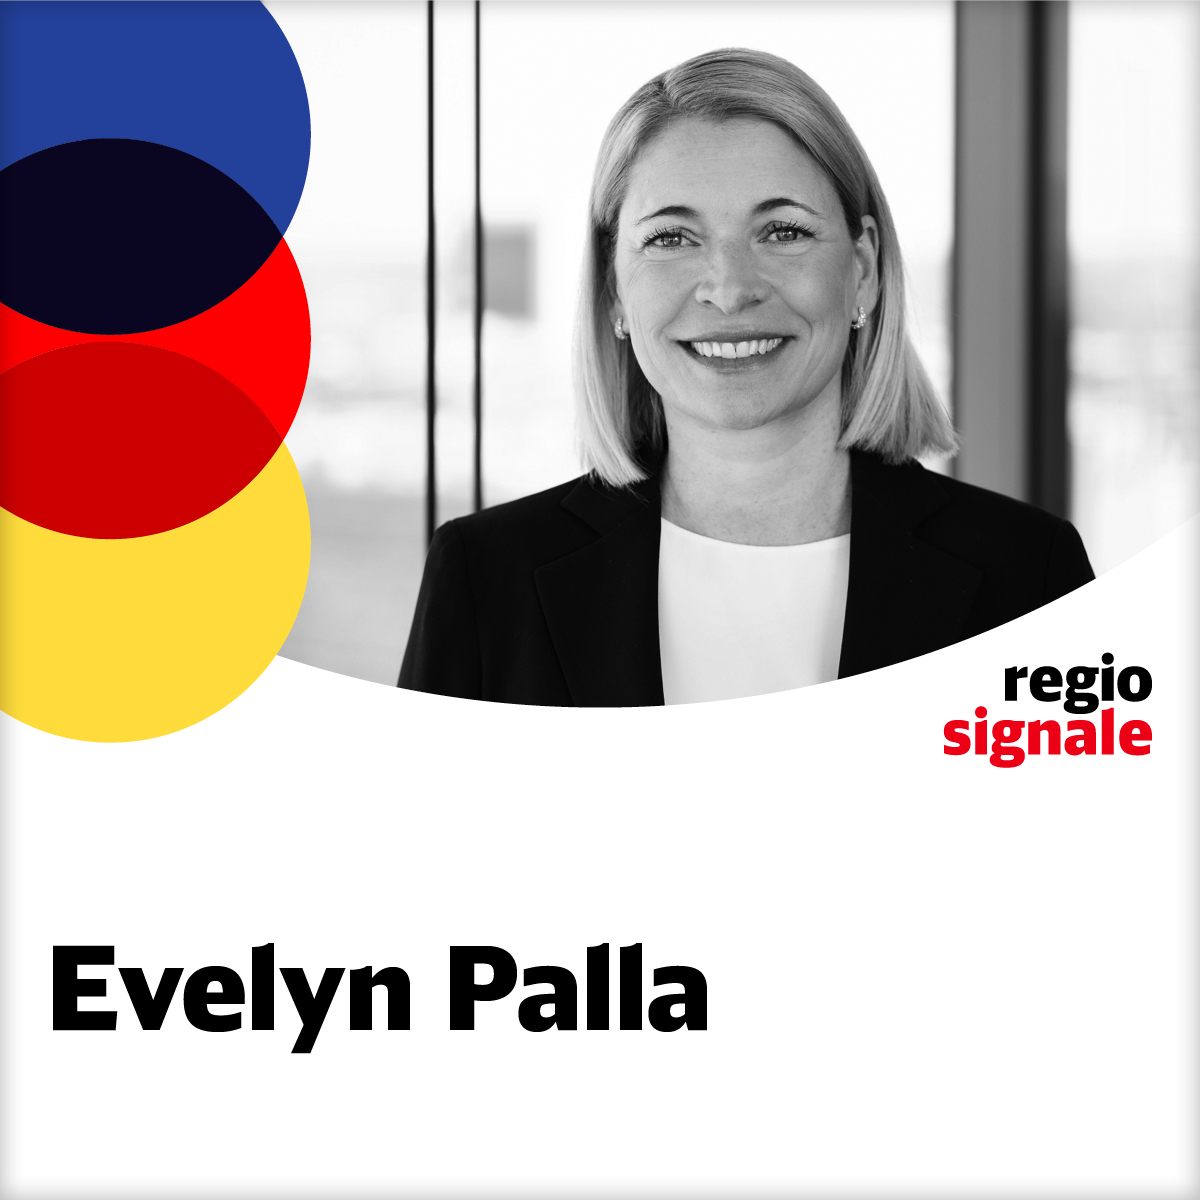 Evelyn Palla